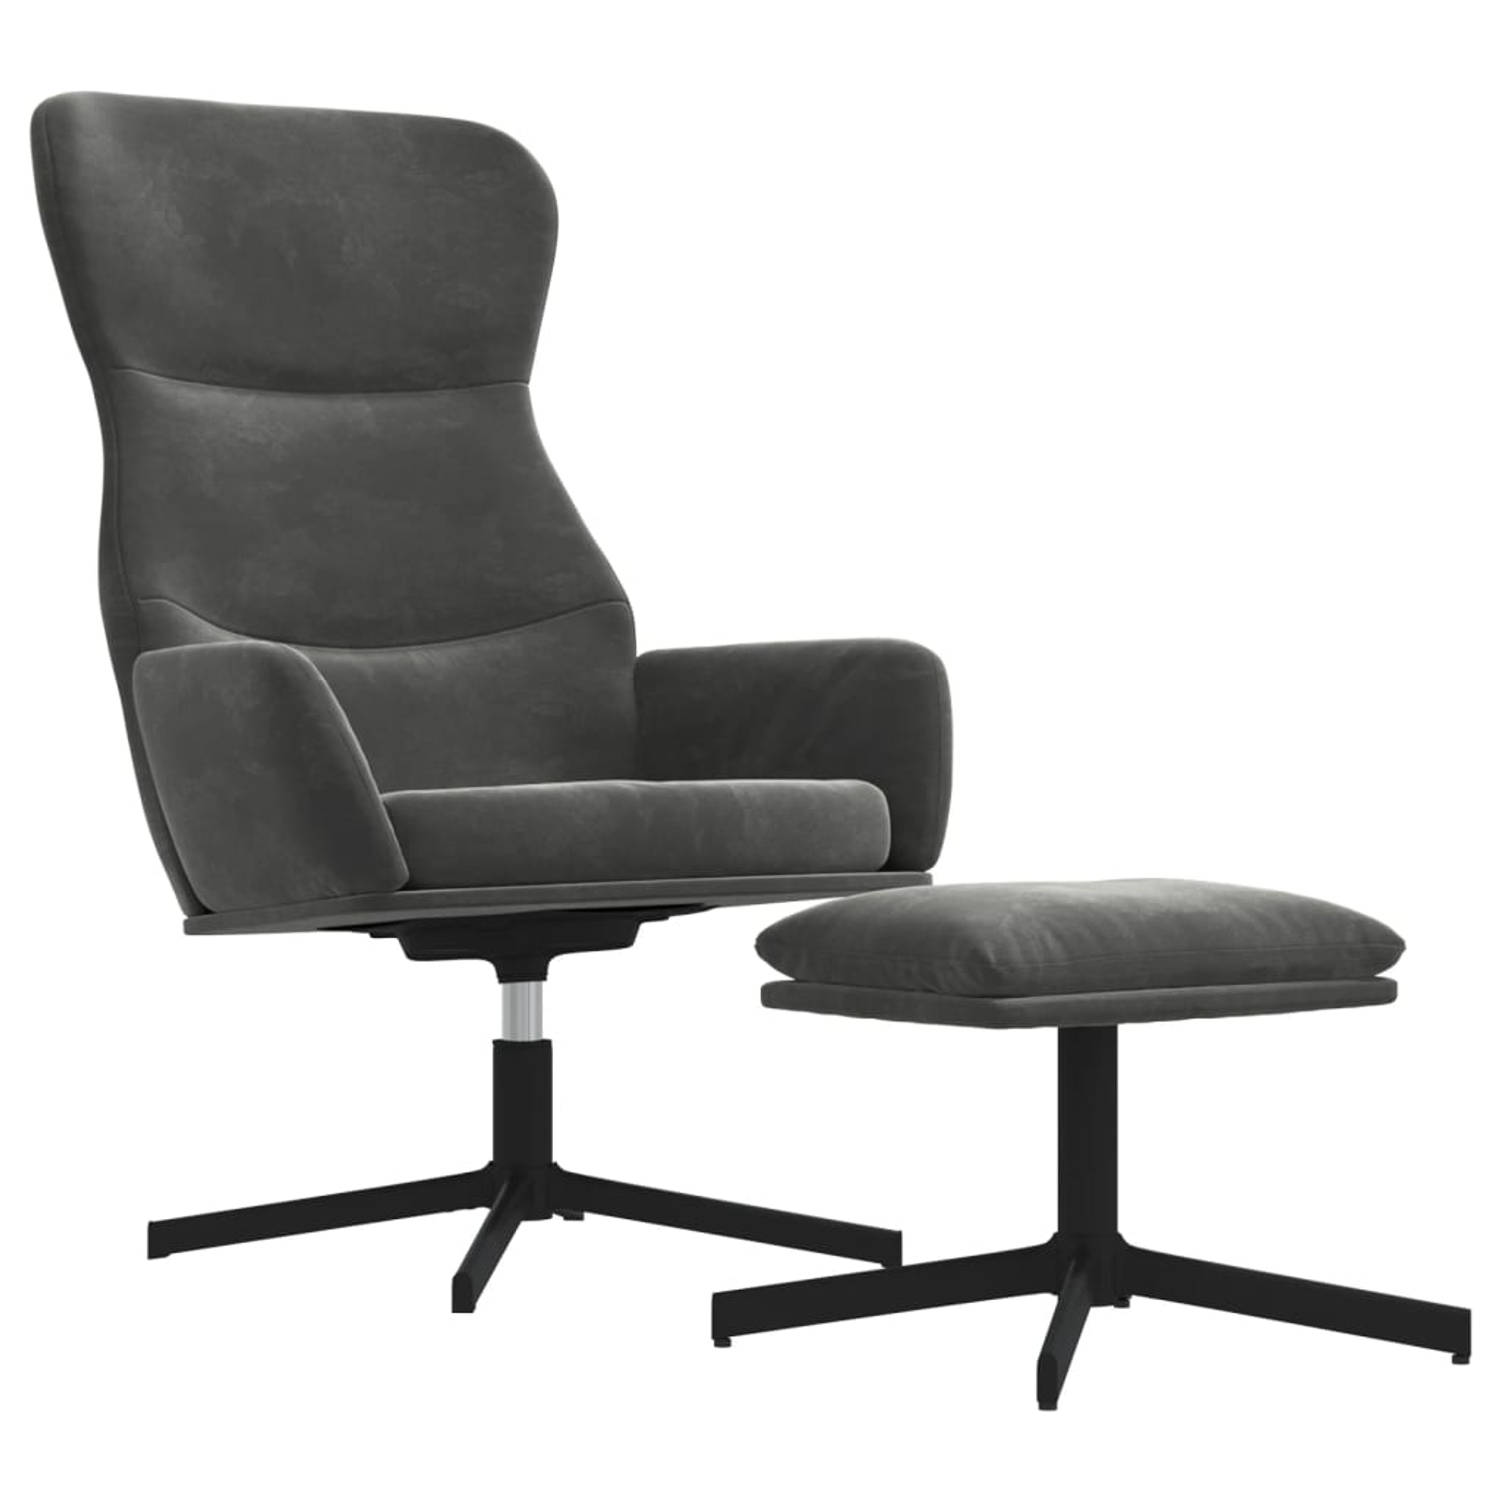 The Living Store Relaxstoel Velvet - Donkergrijs - 70 x 77 x 94 cm - Comfortabele stoel met voetenbank